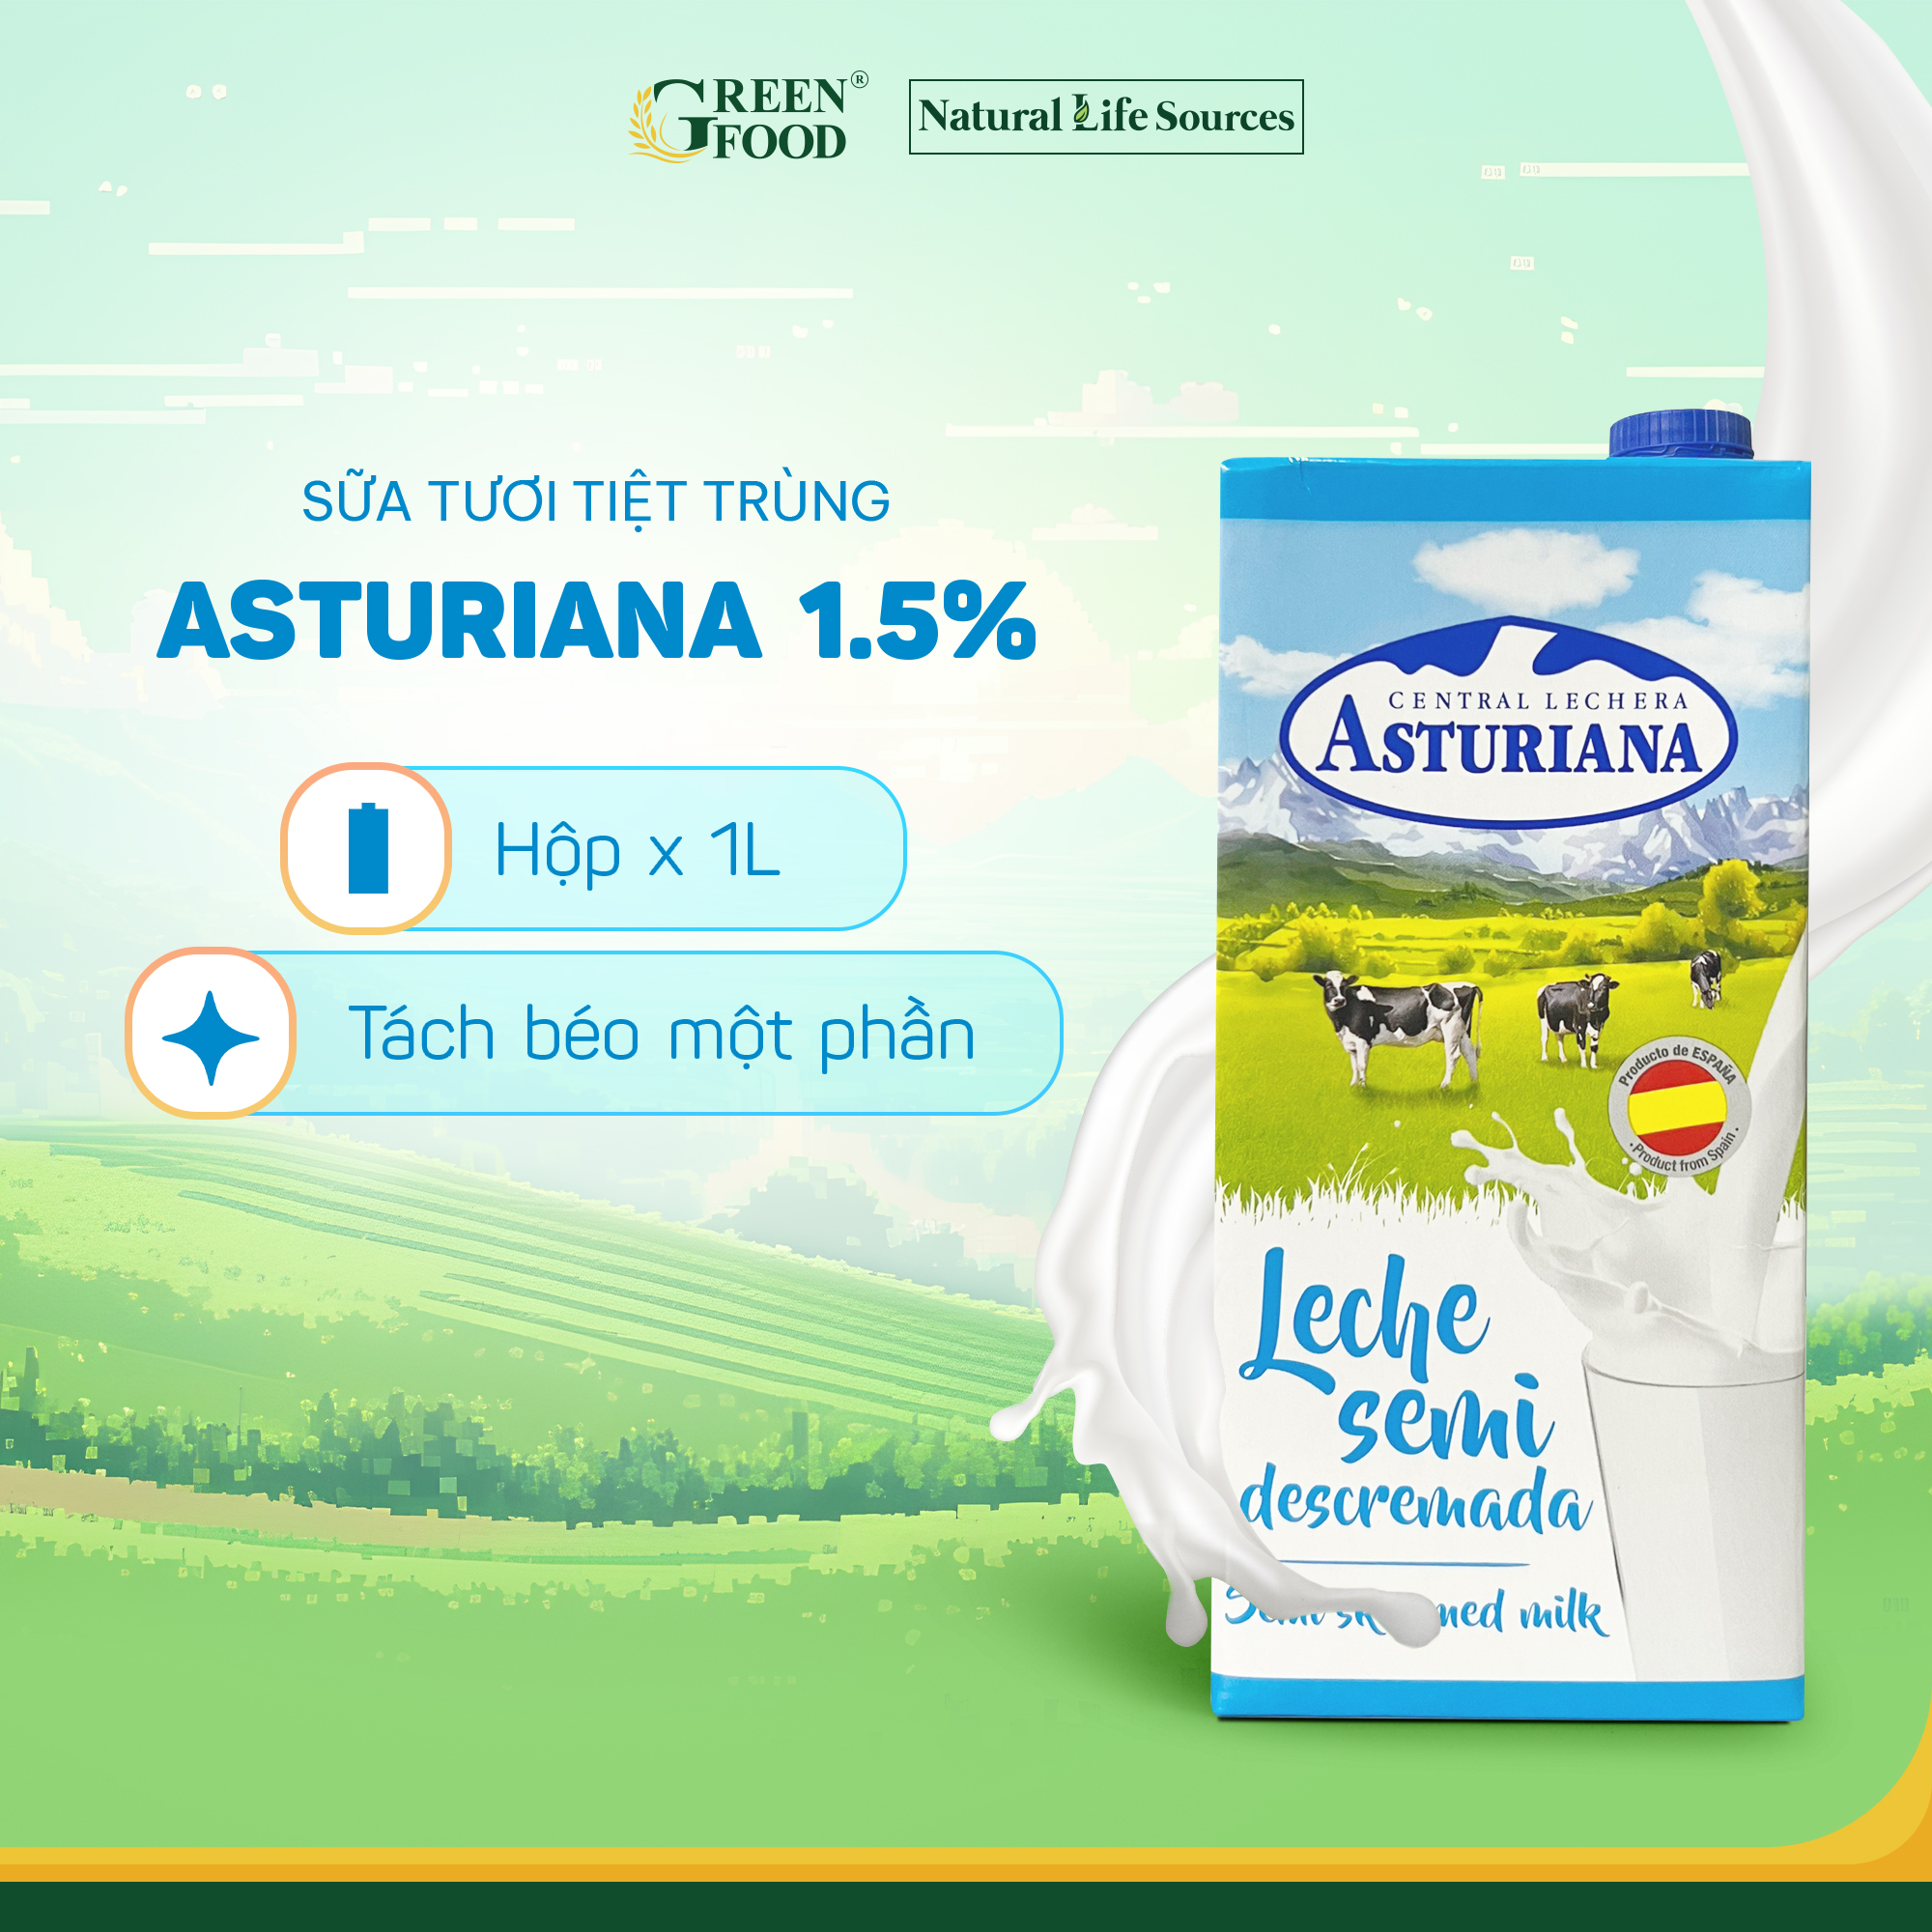 Sữa Tươi Tiệt Trùng ASTURIANA tách béo 1 phần 1L - Béo ít 1,5%, Không Đường Phù hợp Ăn Kiêng, Nhập khẩu từTây Ban Nha